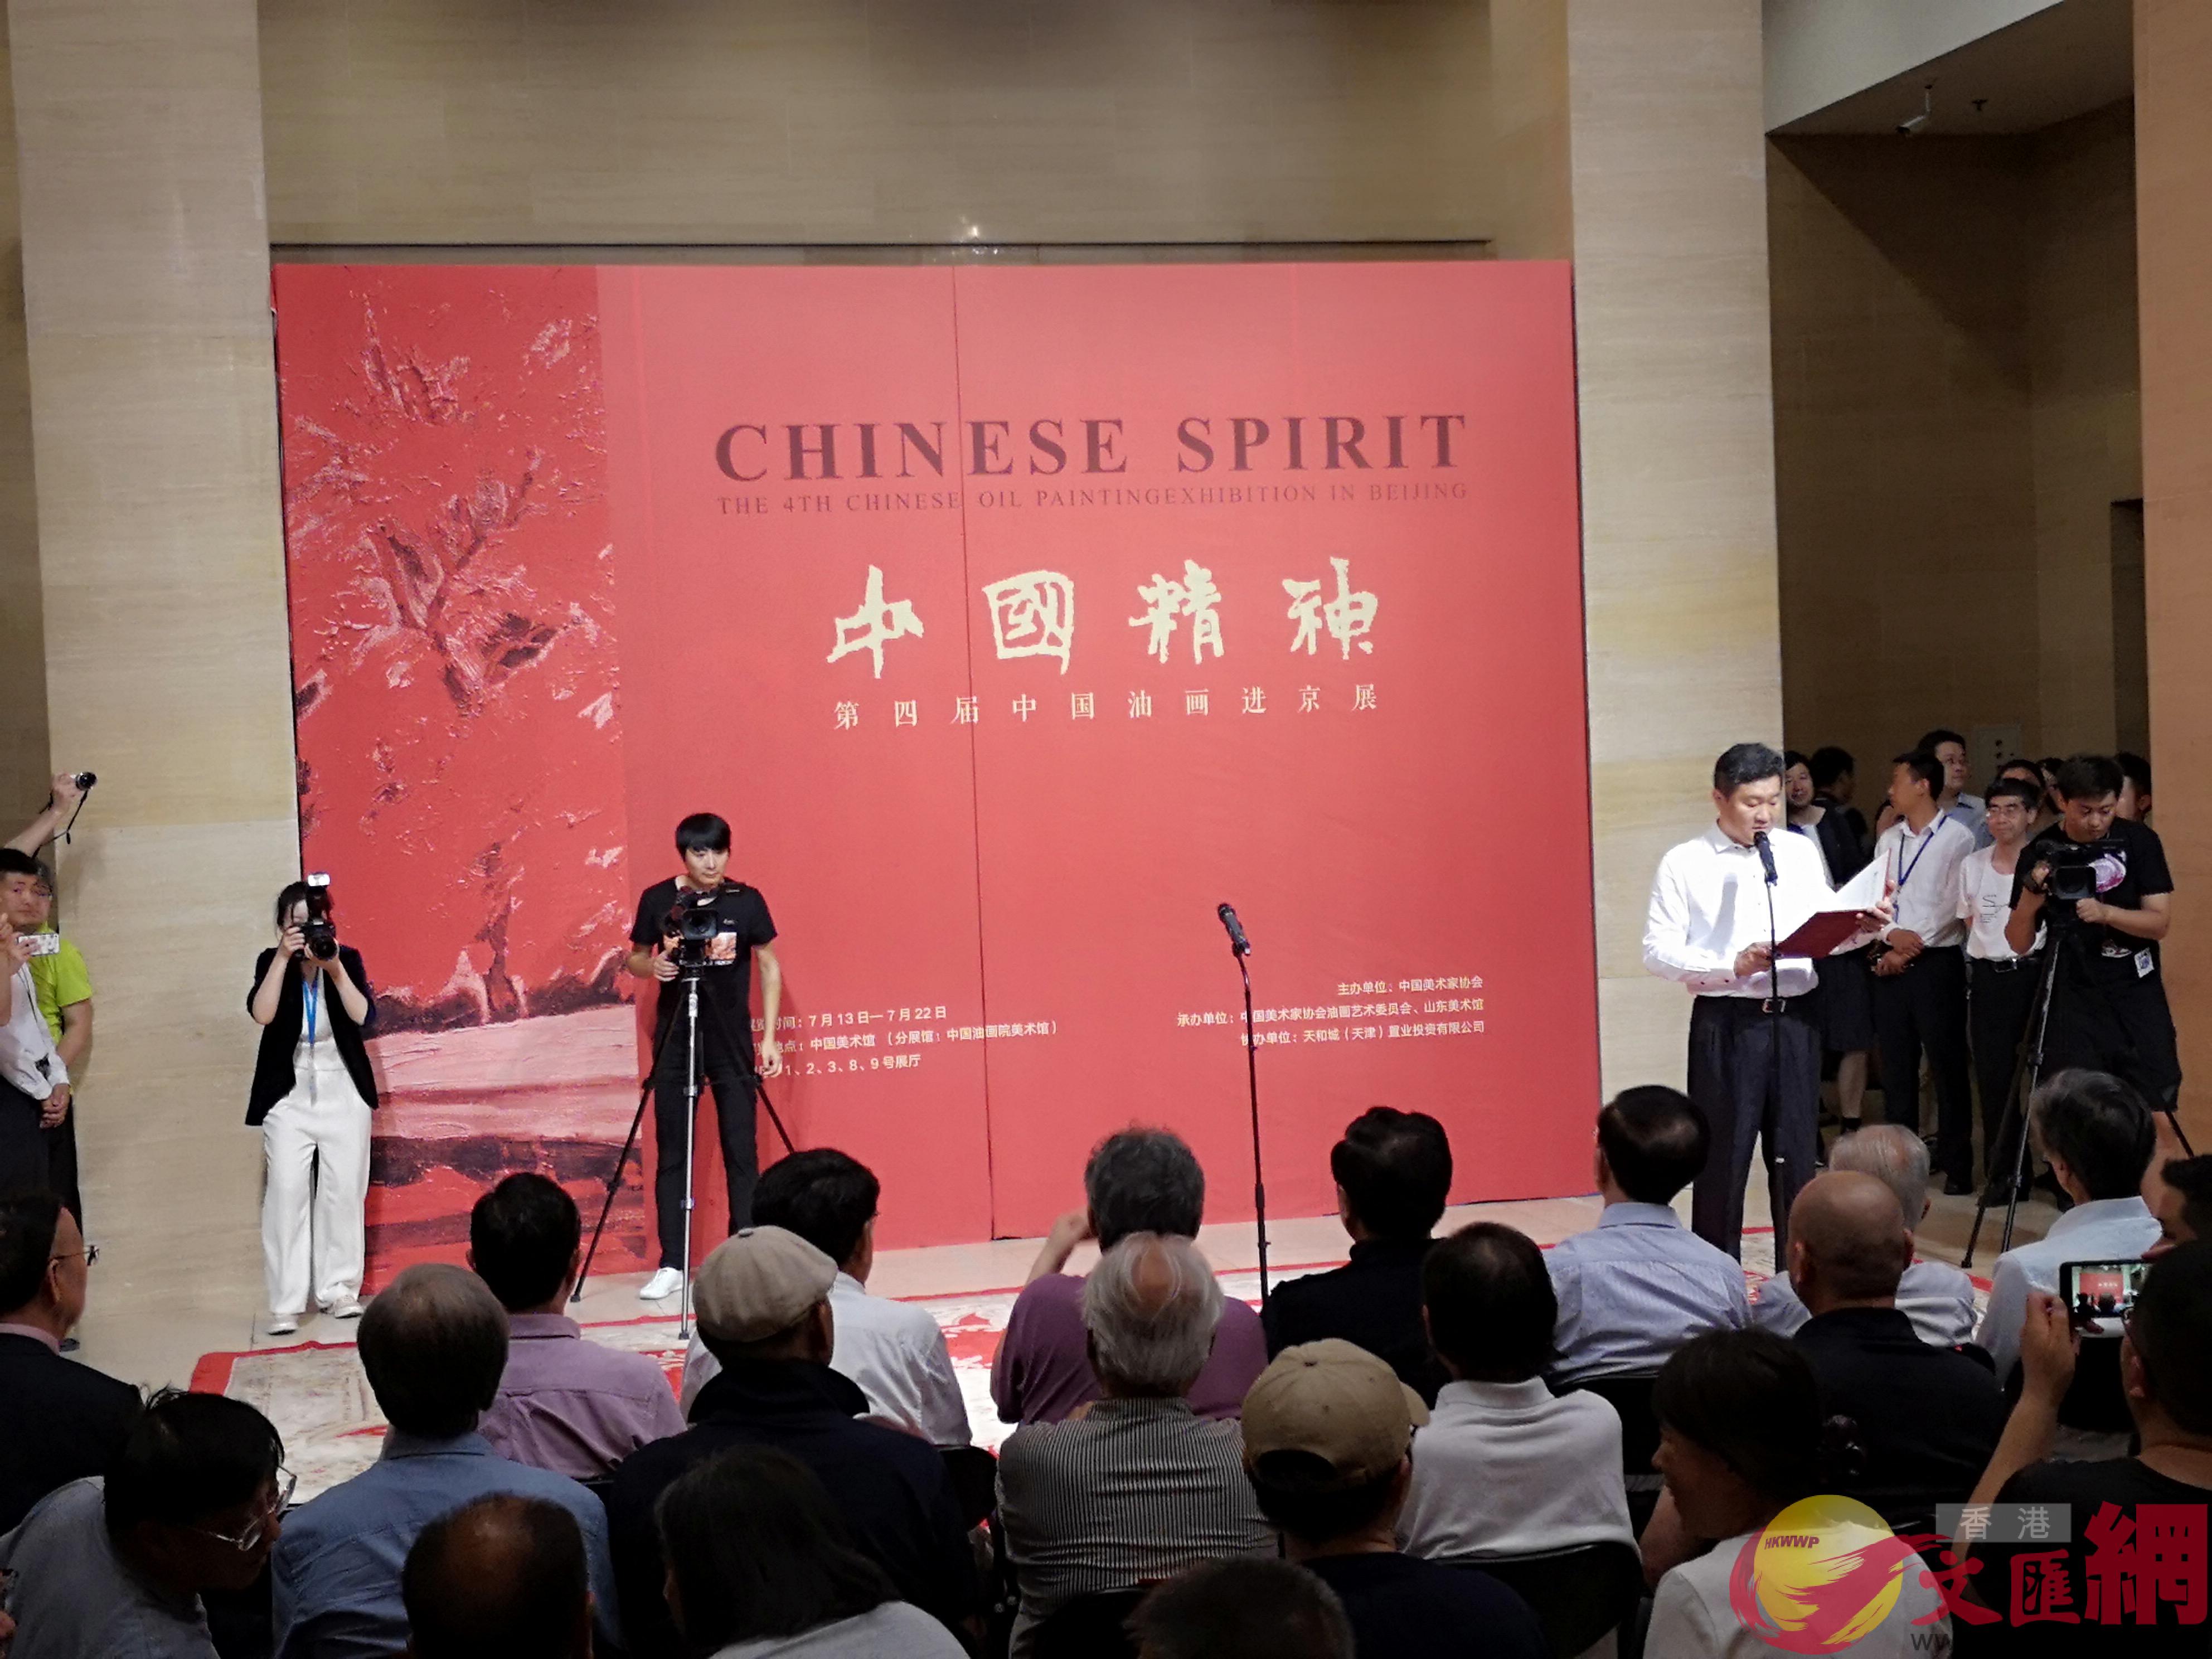 u中國精神XX第四屆中國油畫進京展v開幕式在北京中國美術館舉行]記者 張寶峰 攝^